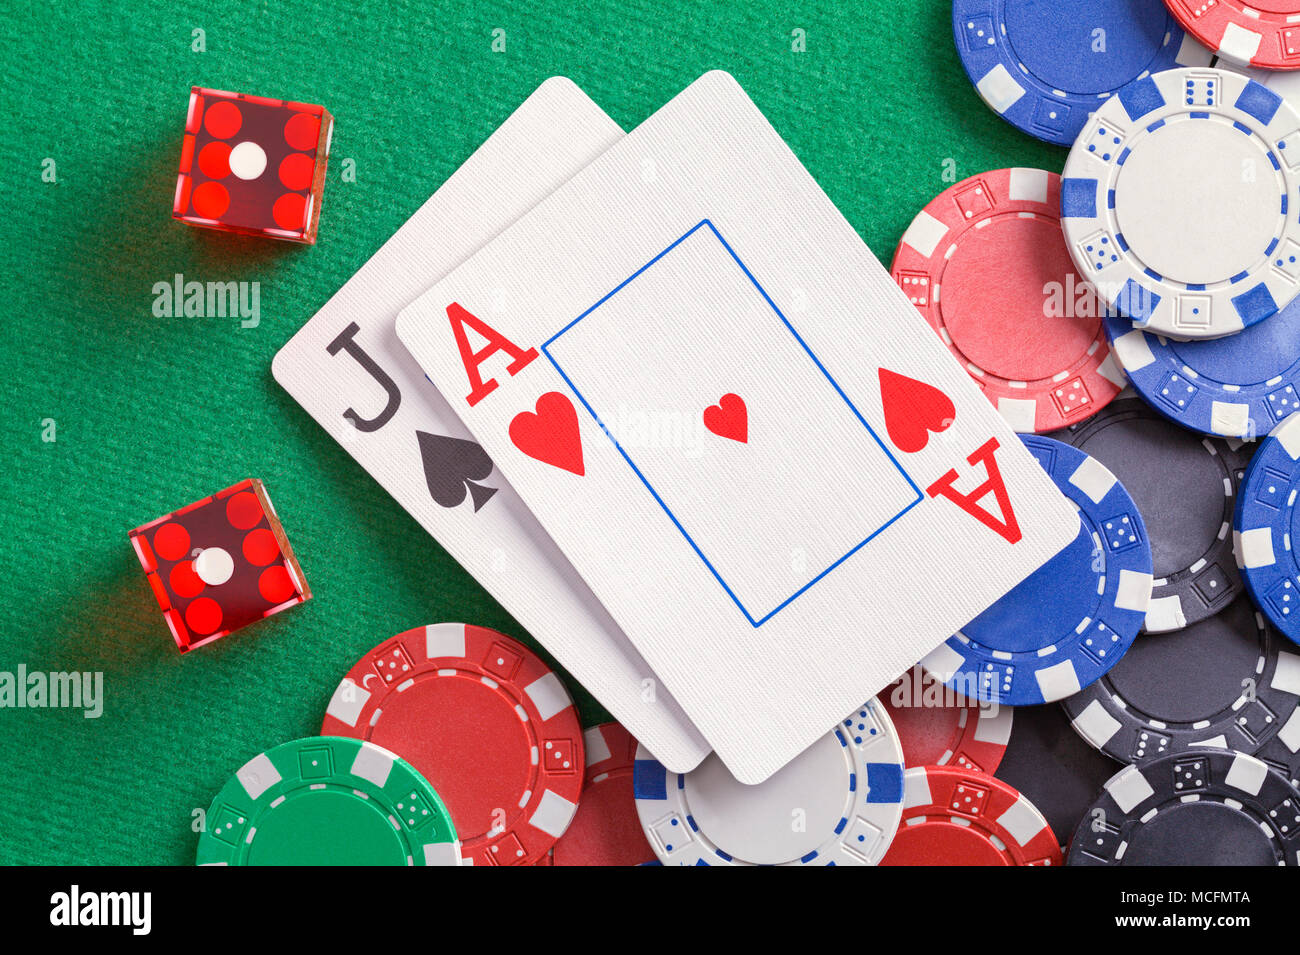 Black Jack Karten mit Würfeln und Casino Chips Stockfotografie - Alamy